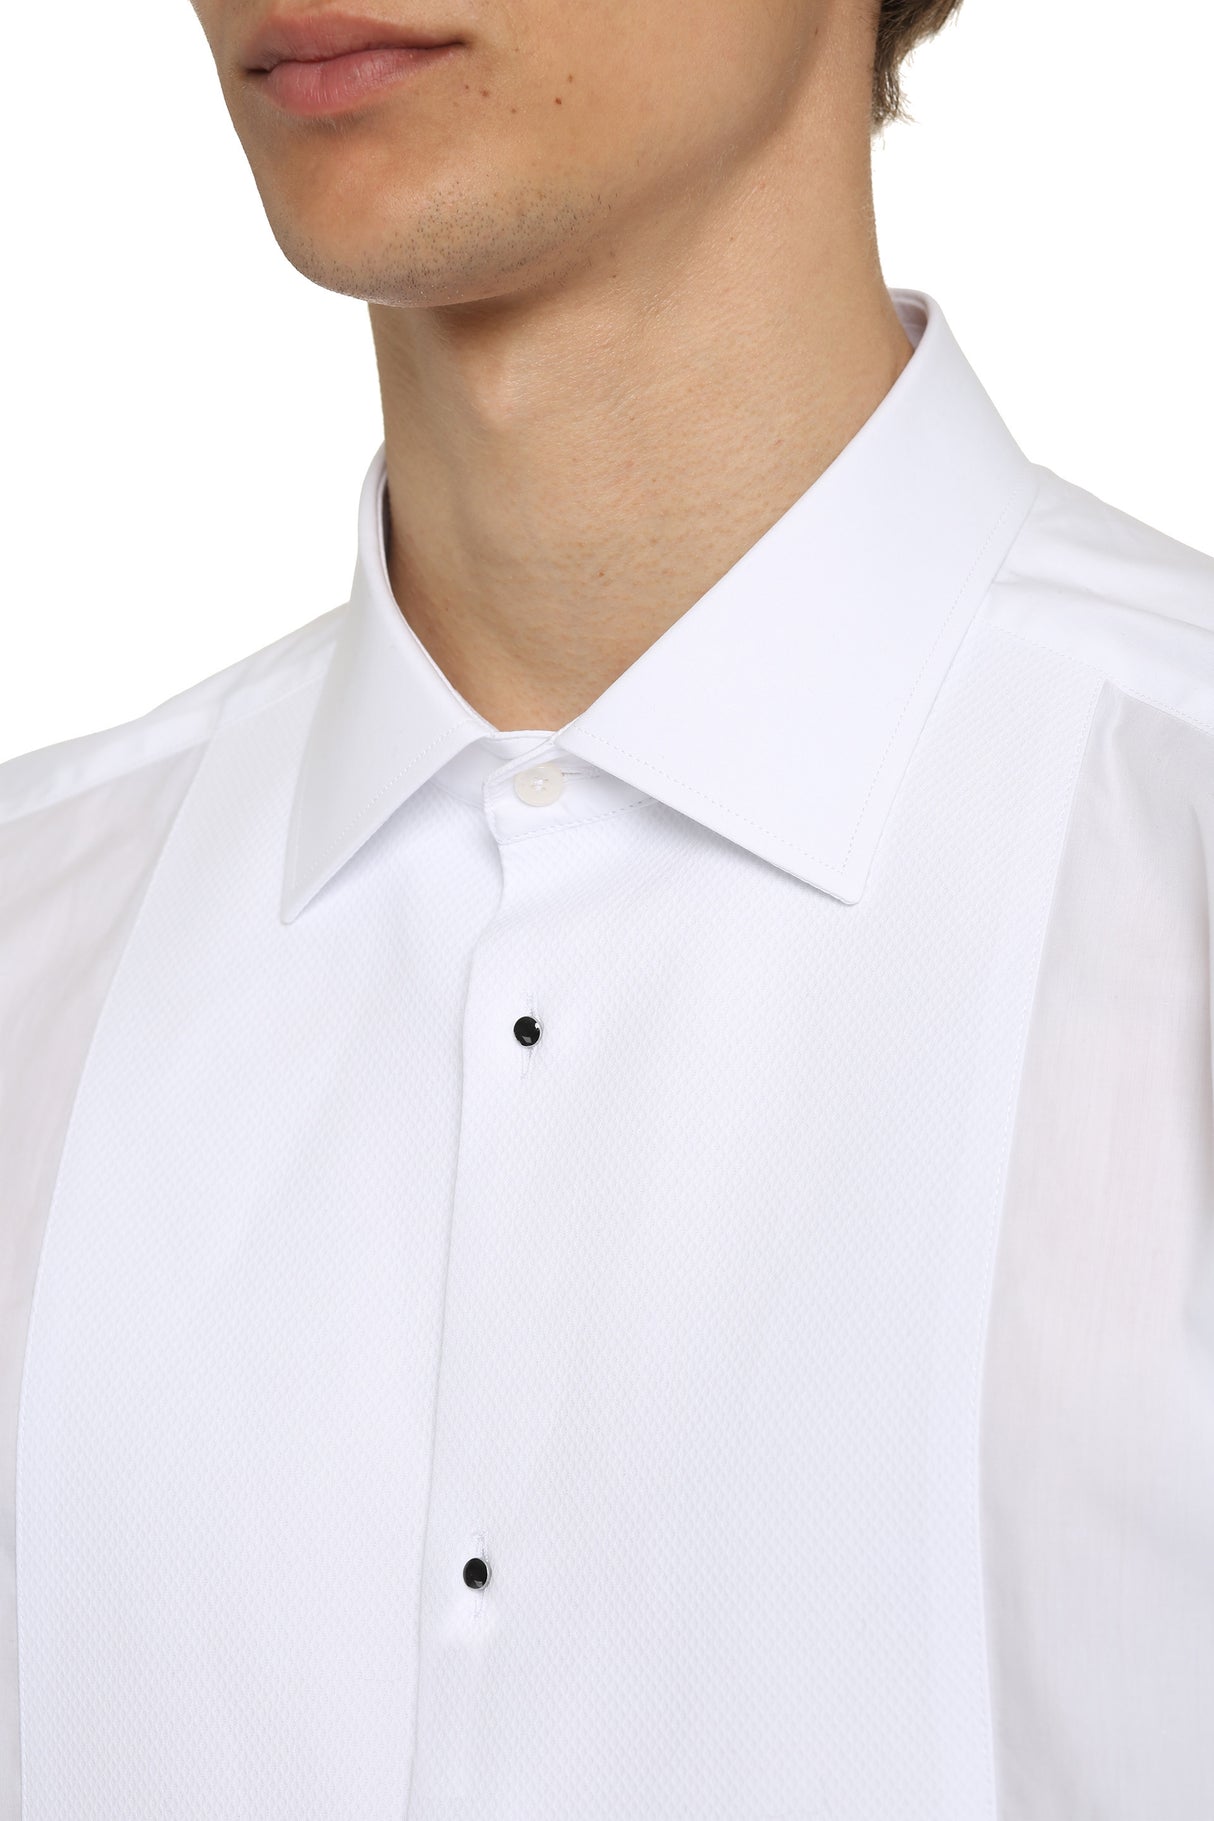 قميص تكسيدو رجالي أبيض بأزرار مزينة وحافة مدورة - ربيع وصيف 2022